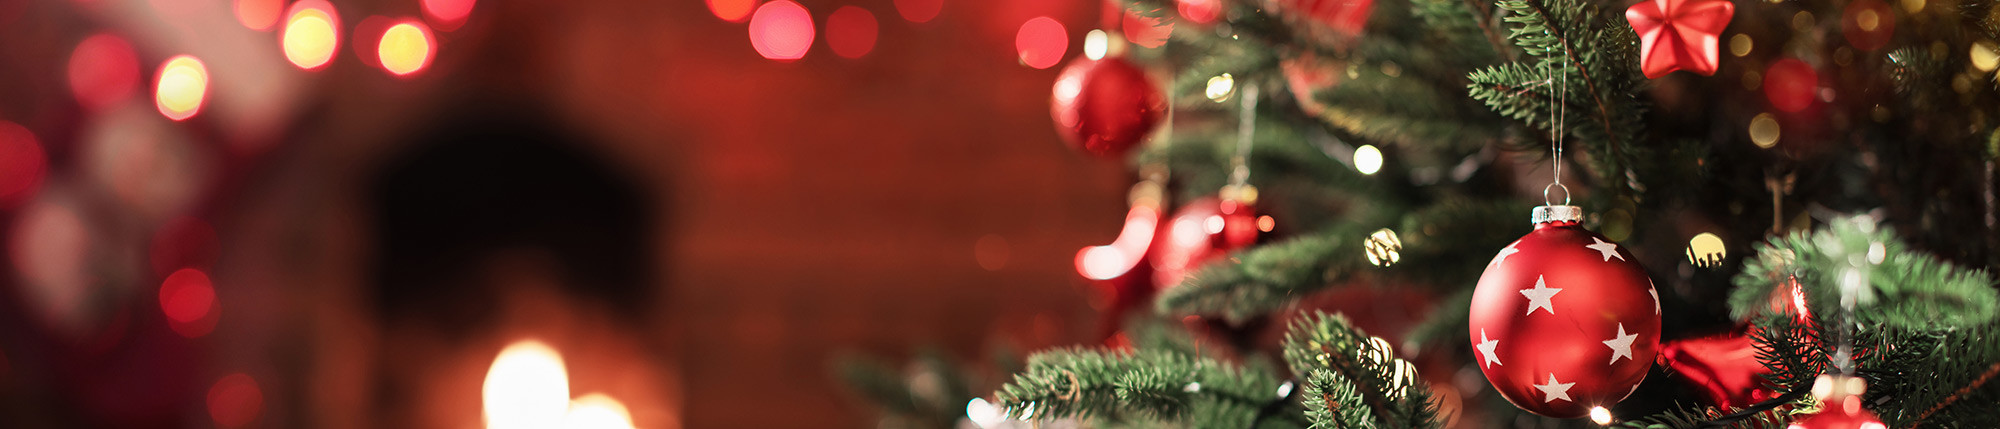 Presentkorgar och Lådor - Julspecial - ParmaShop.com